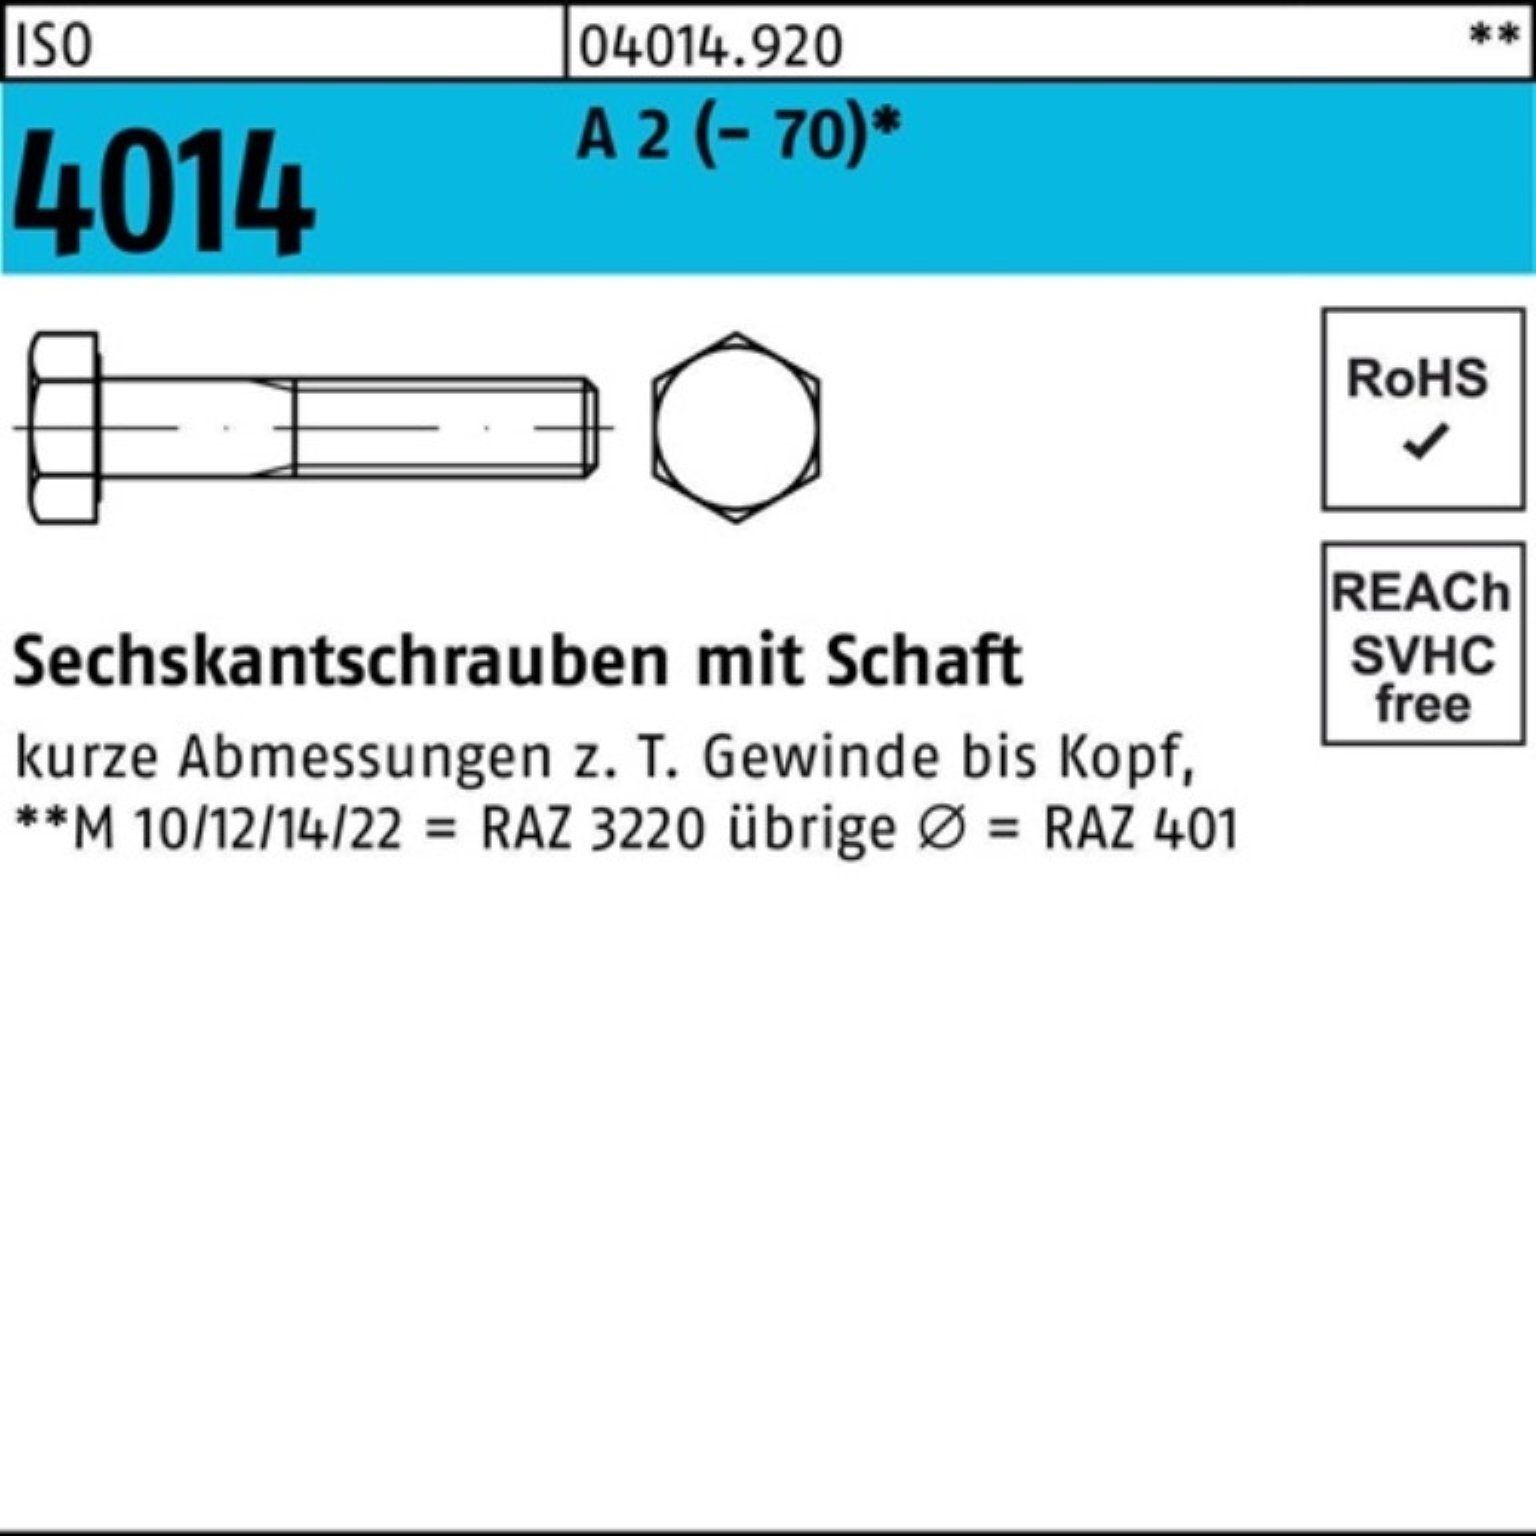 Bufab Sechskantschraube 100er Pack Sechskantschraube ISO 4014 Schaft M8x 80 A 2 (70) 100 St